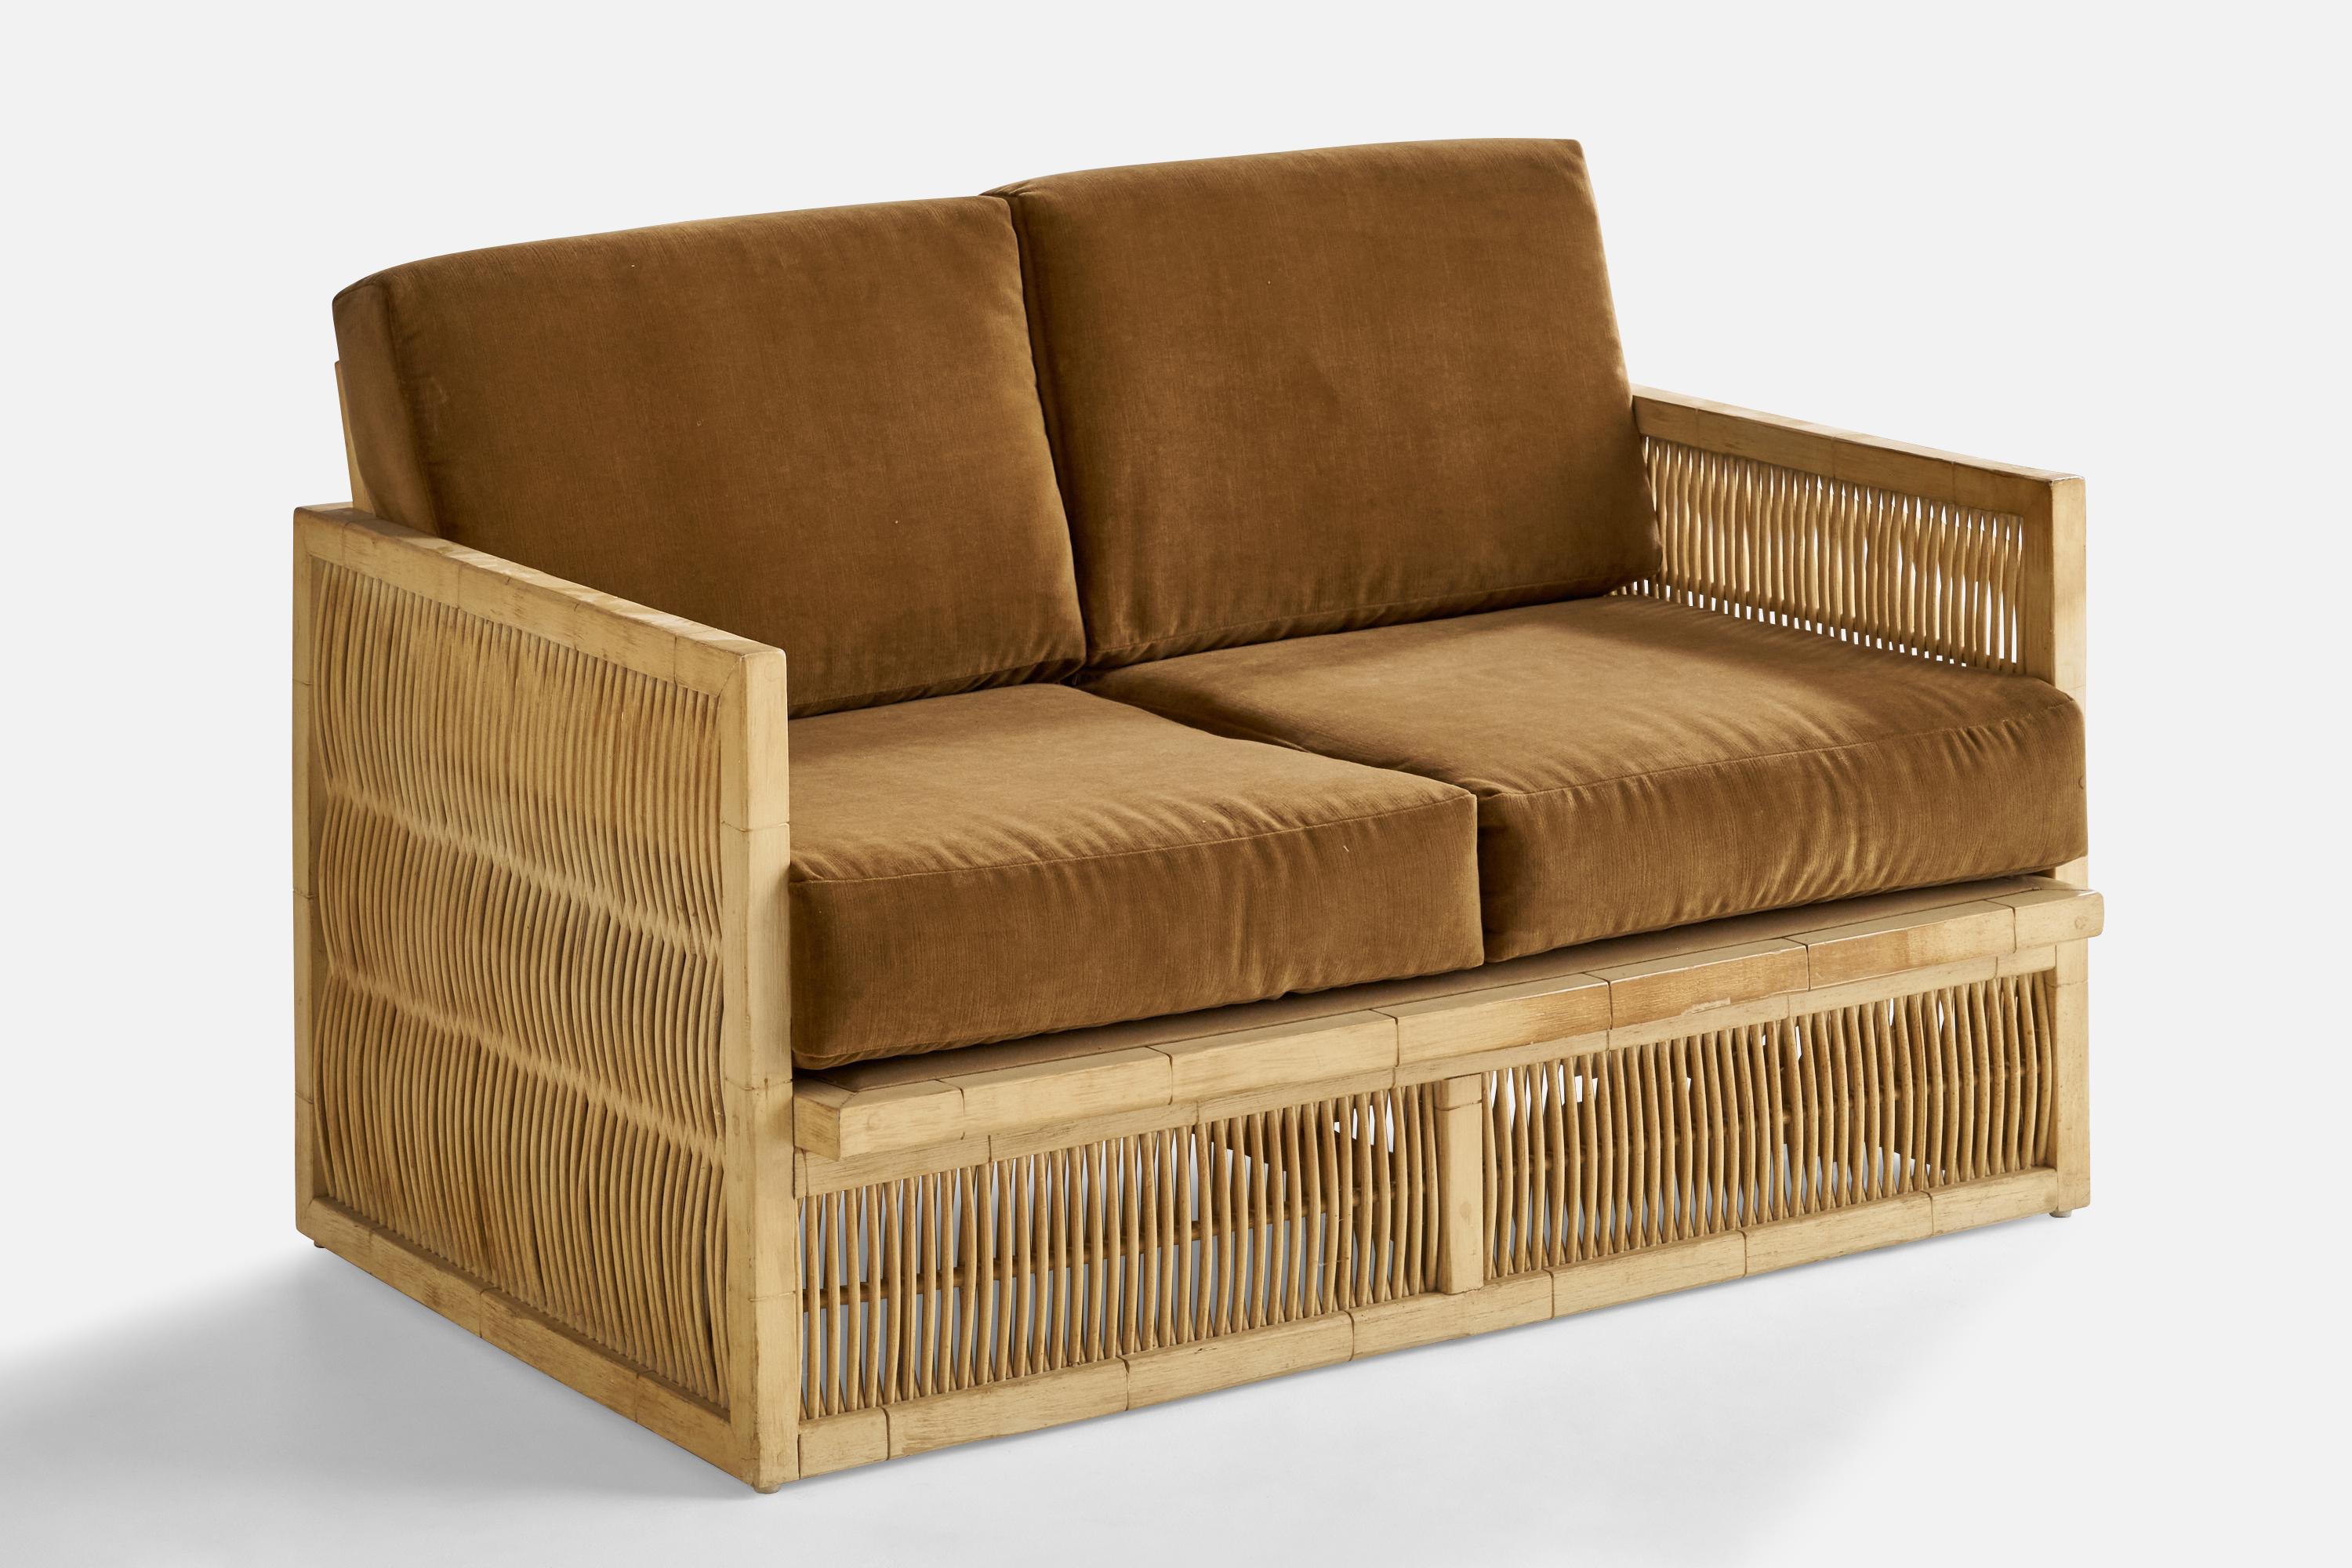 Canapé en chêne cérusé, bambou et velours gris brun, conçu et produit aux États-Unis, années 1960.

Hauteur du siège : 17.25